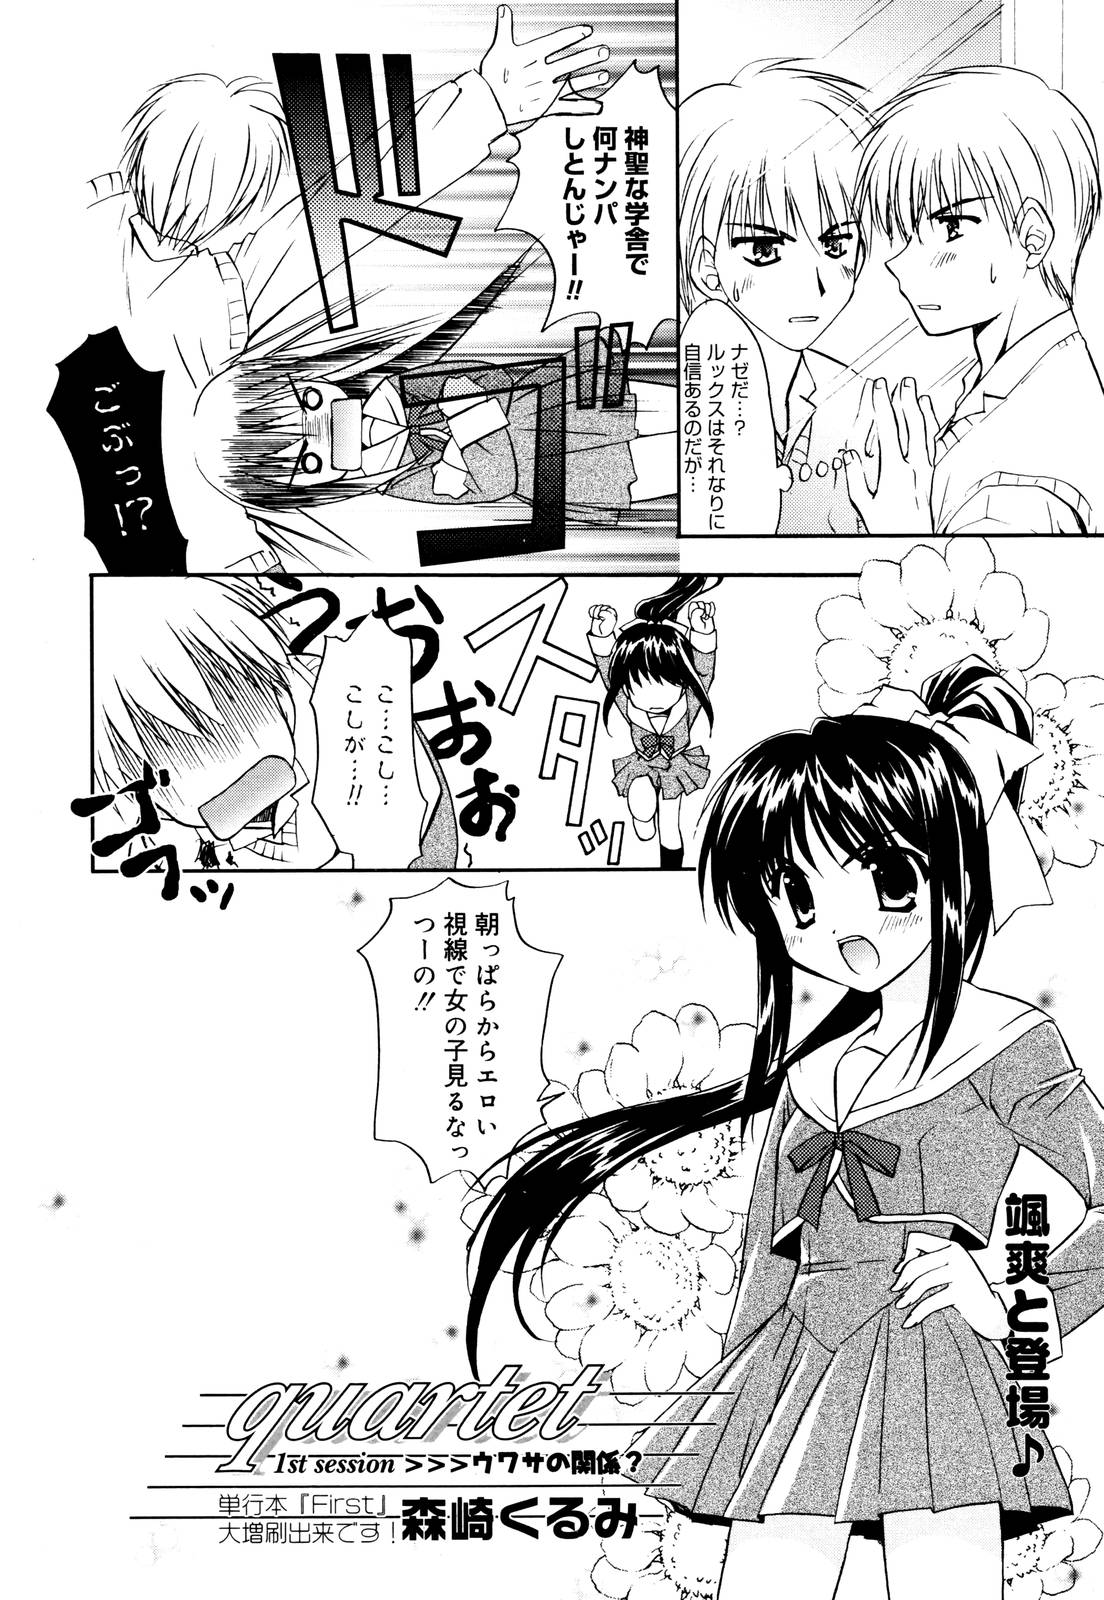 Manga Bangaichi 2006-01 page 24 full